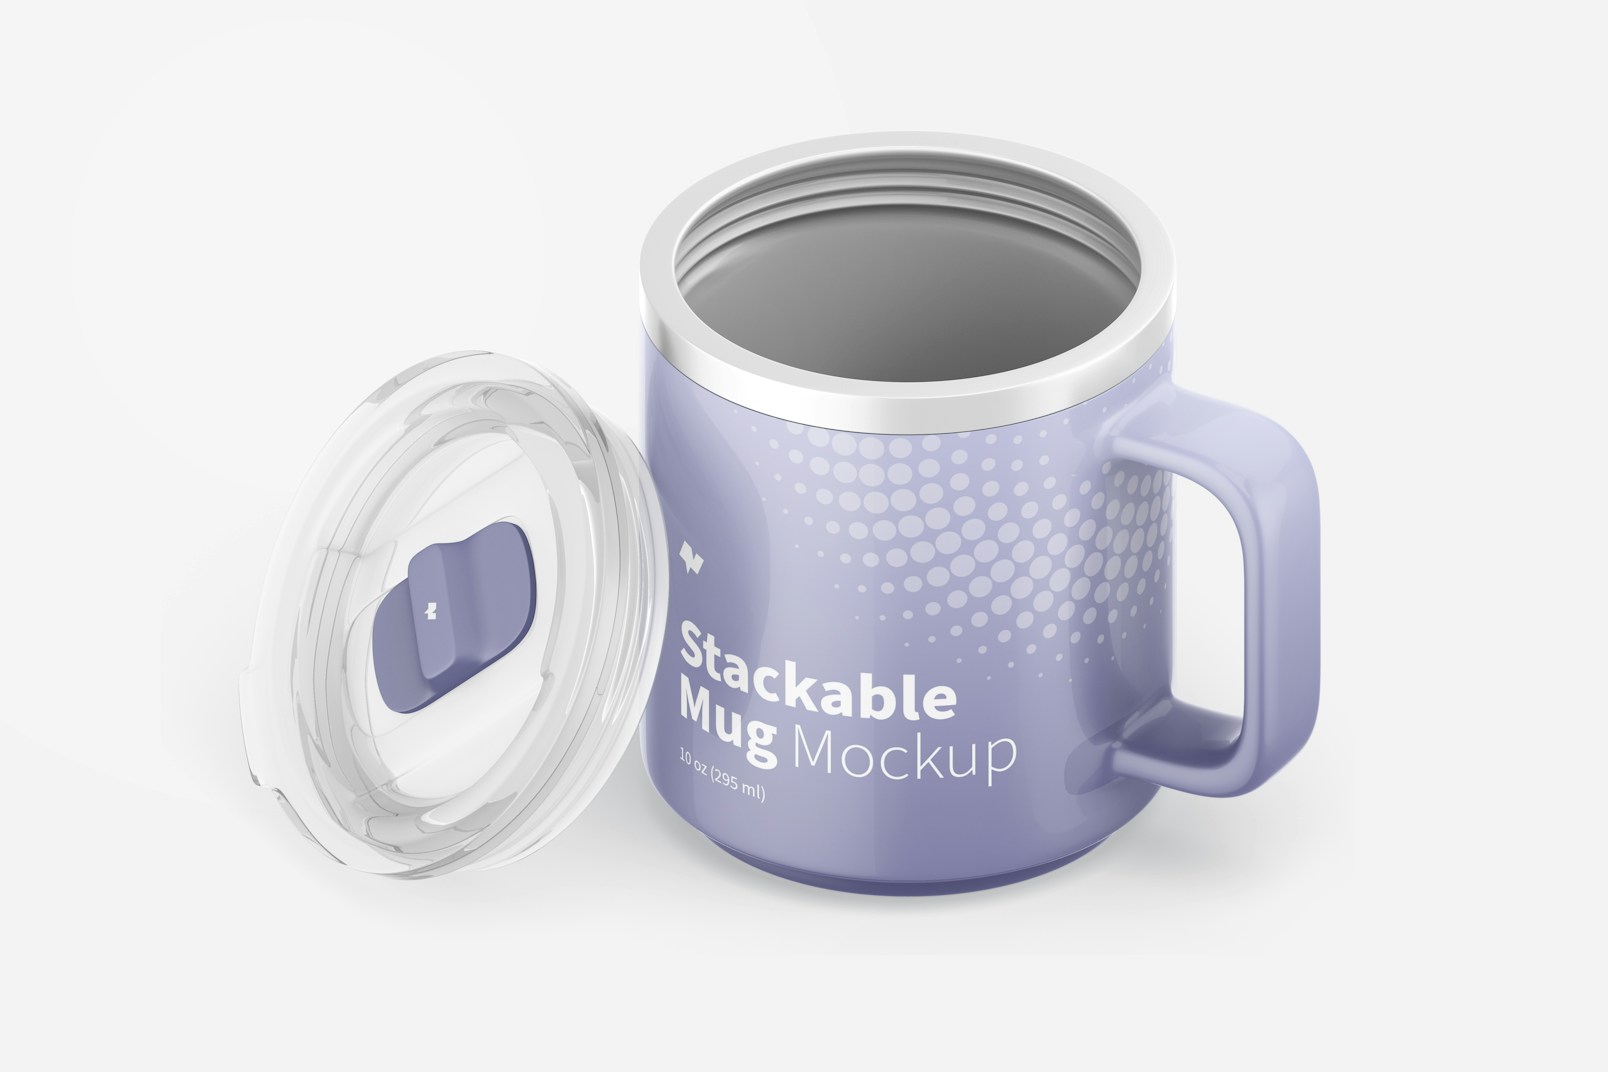 10 oz Stackable Mug Mockup, Isometric View Opened